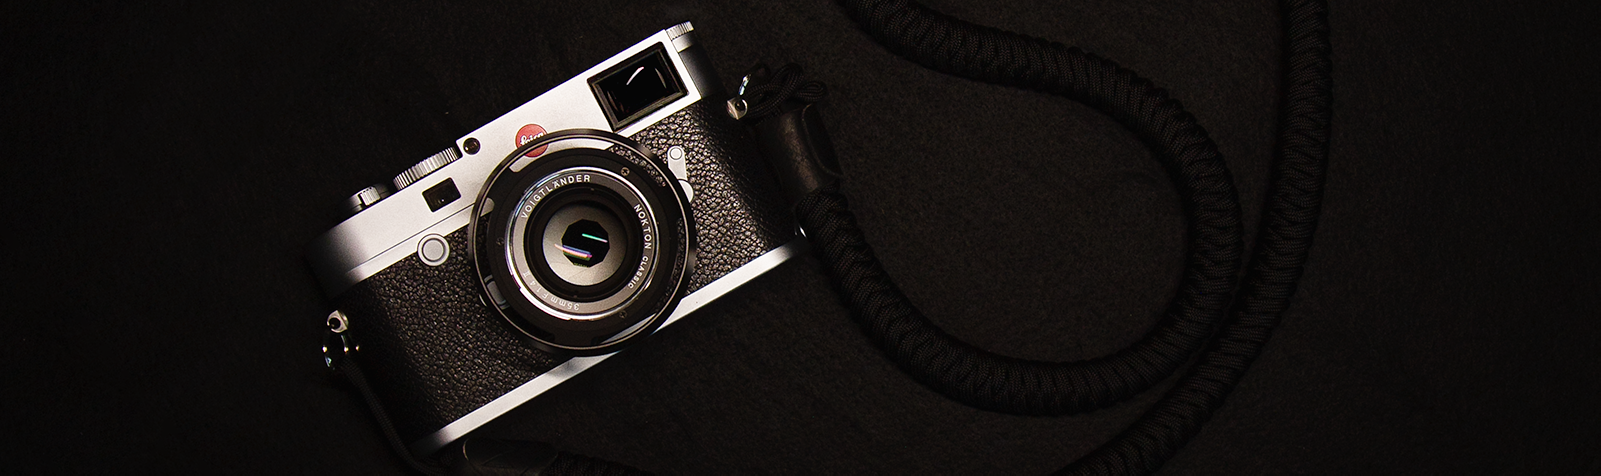 カメラ レンズ(単焦点) Voigtlander Nokton Classic II 35mm f/1.4 review – Leica Lenses for 